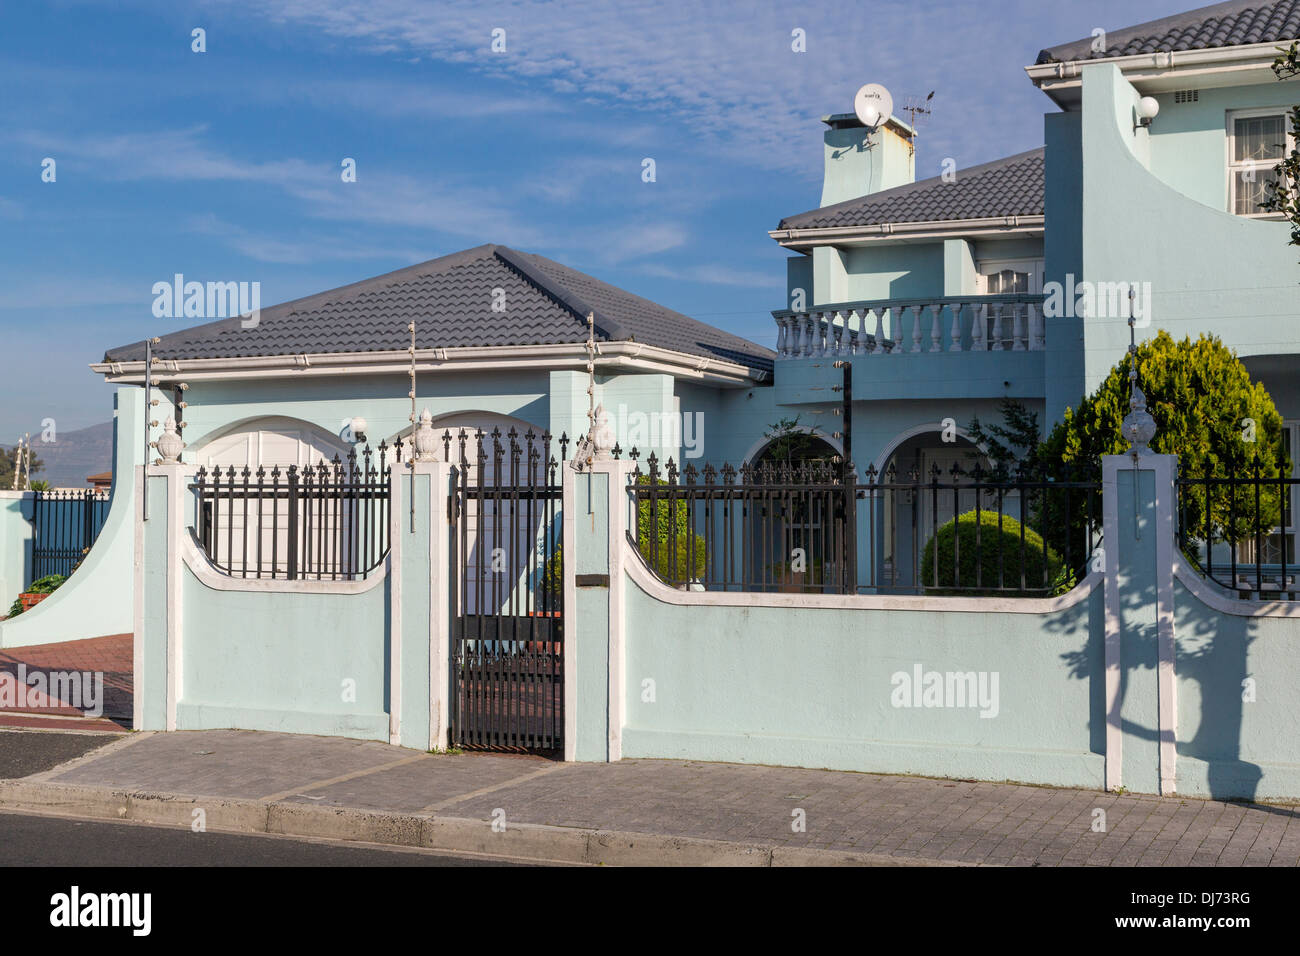 Sudáfrica, Cape Town, Athlone suburbio. Cables de alarma de seguridad en la cima de la muralla que rodea la casa de clase superior. Foto de stock